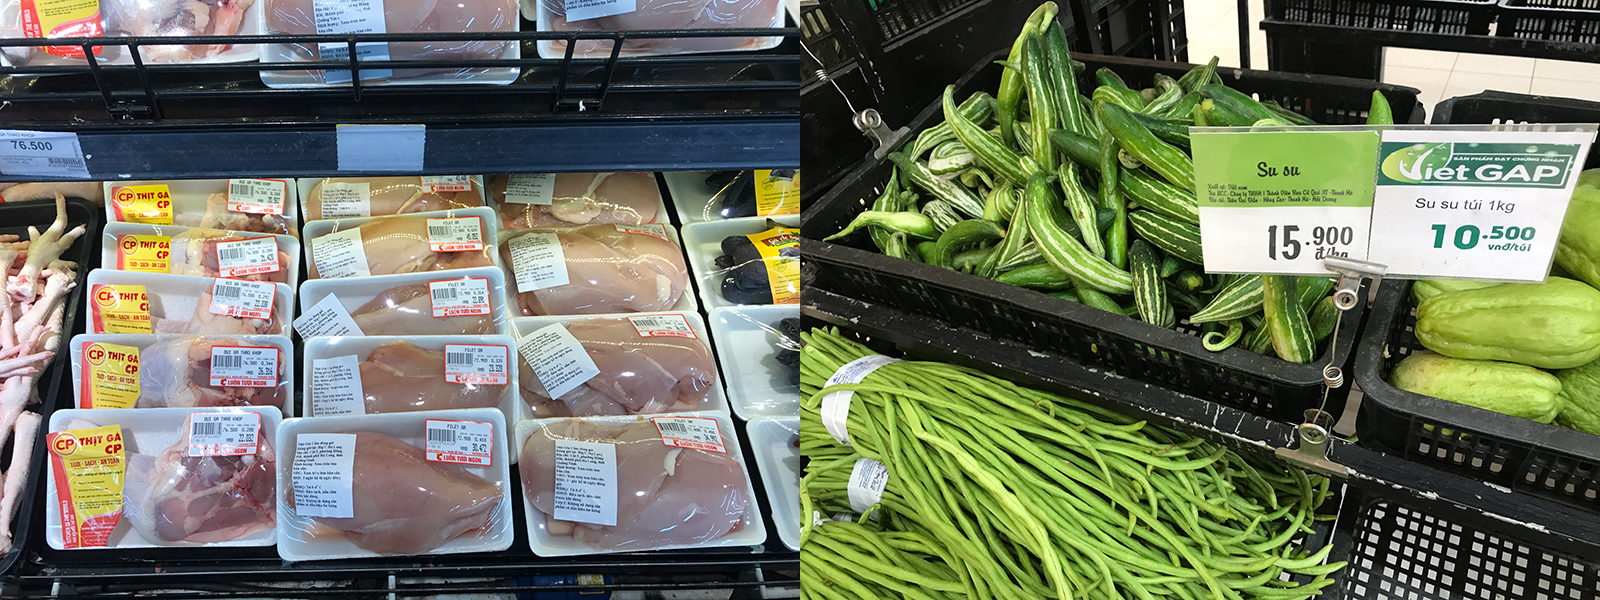 Nông sản tại siêu thị BigC (TP Hạ Long) đảm bảo thông tin, dễ dàng cho việc trích xuất nguồn gốc